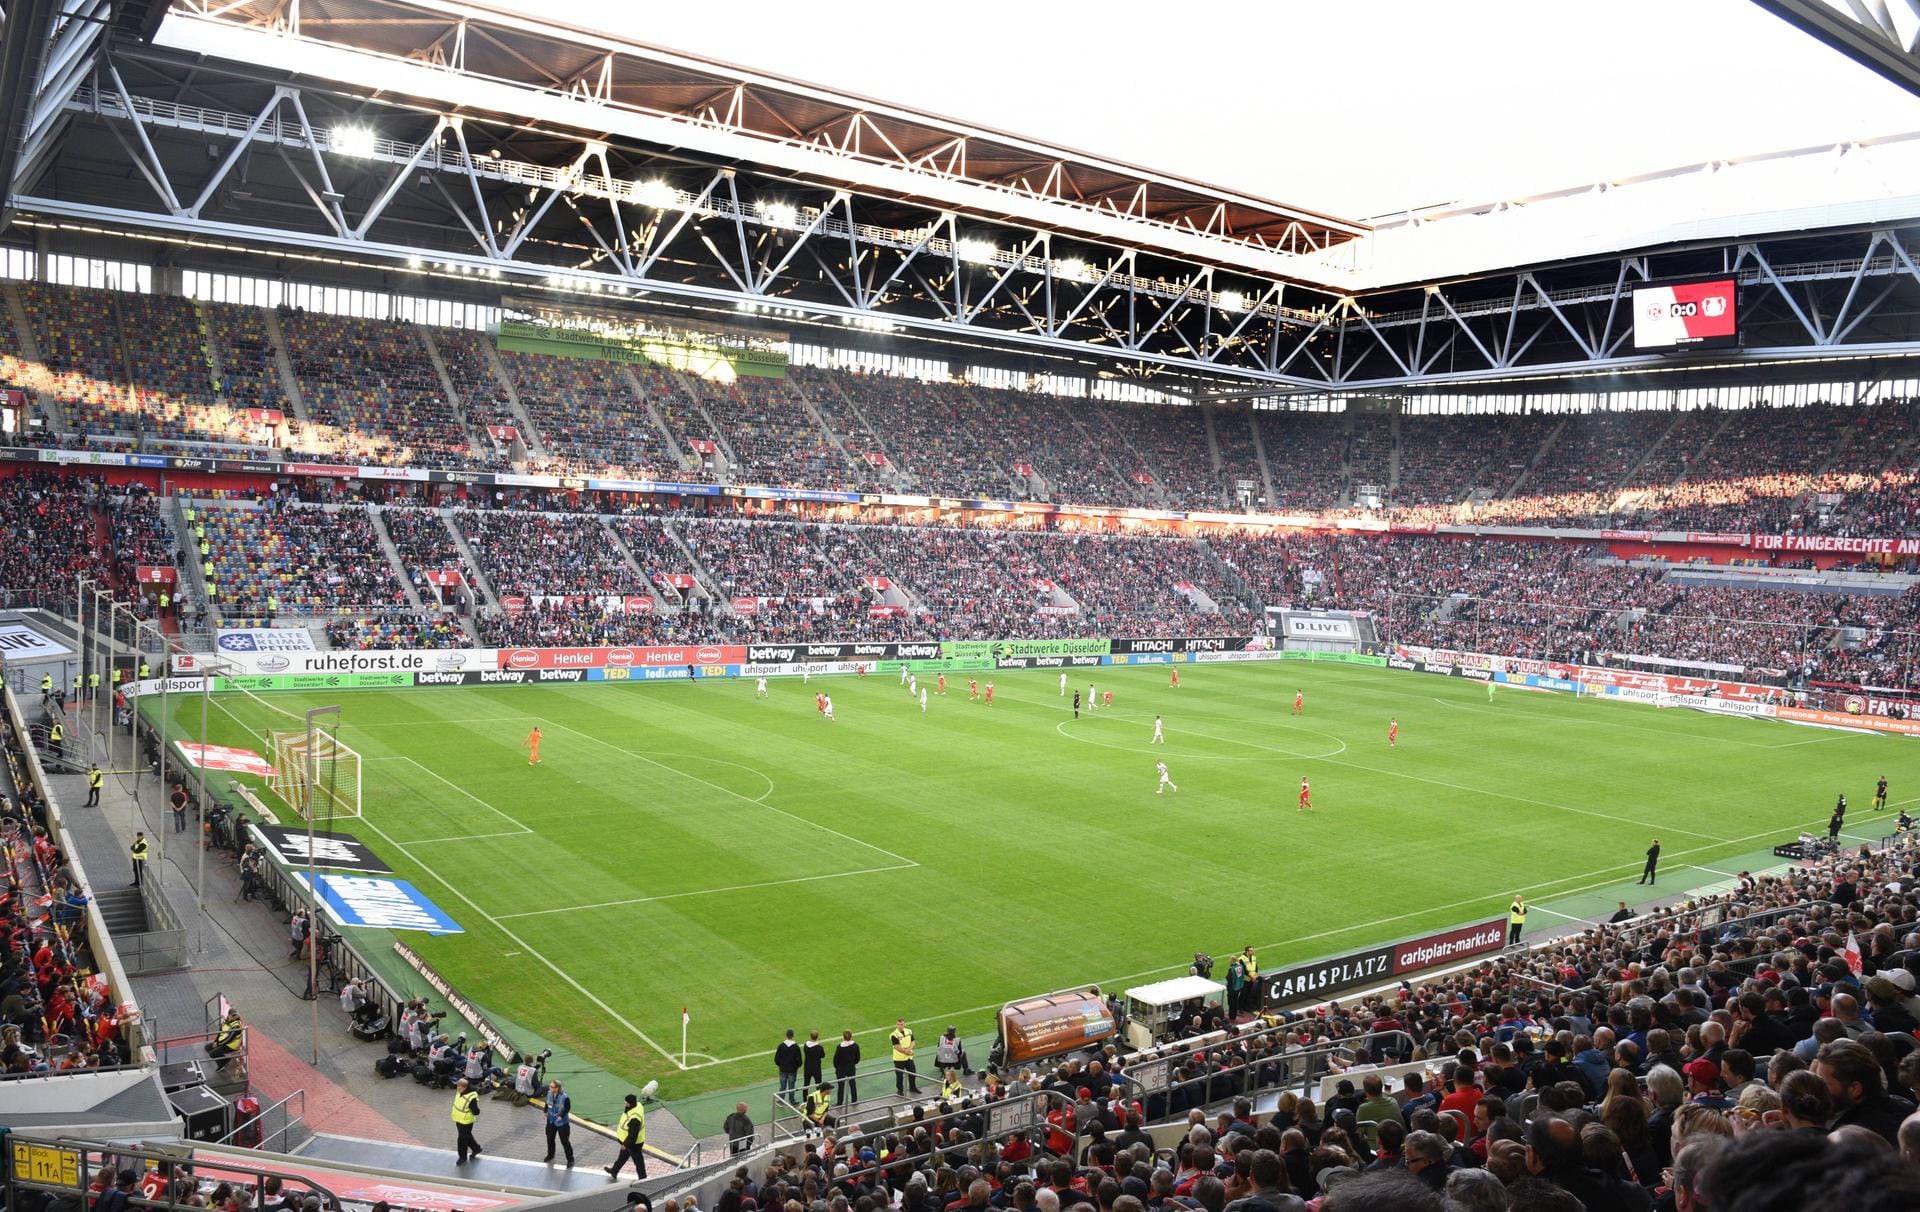 Die Esprit Arena in Düsseldorf (54.600 Plätze).